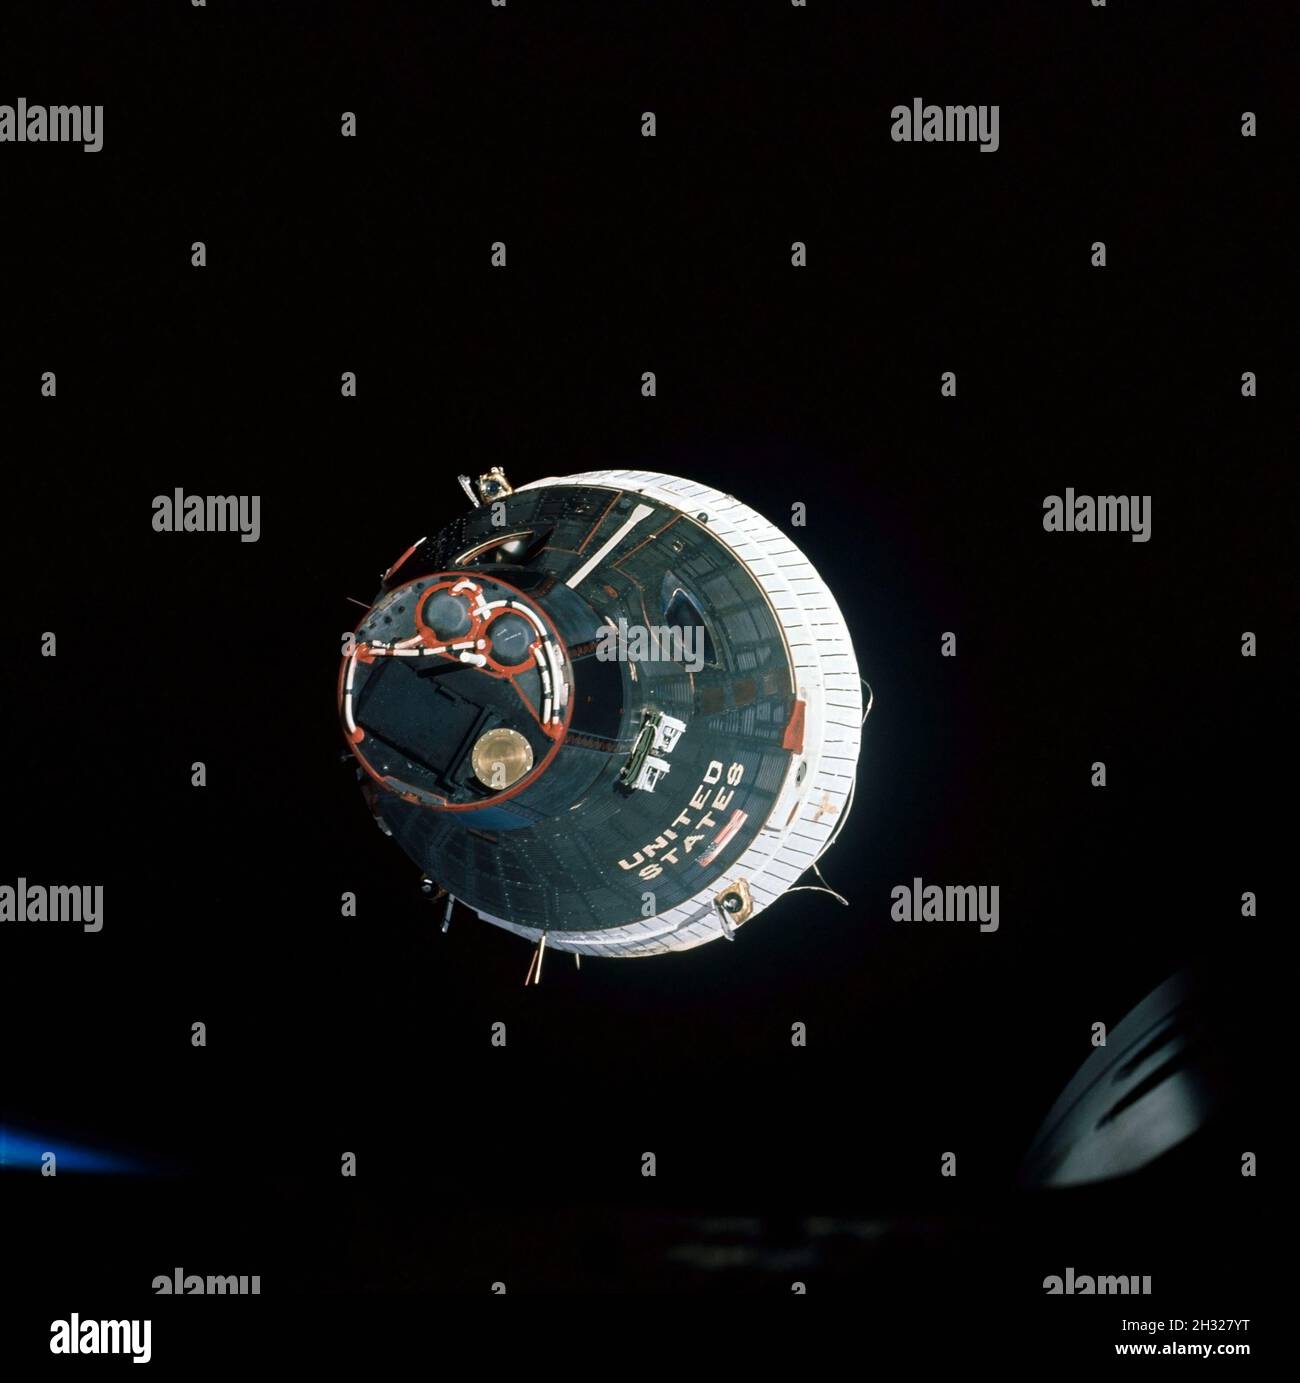 (15. Dezember 1965) --- die Gemini-7-Sonde der Nationalen Luftfahrt- und Raumfahrtbehörde (NASA), die von der Gemini-6-Sonde während ihrer Rendezvous-Mission im All aus gesehen wurde. Die beiden Raumfahrzeuge sind etwa 43 Meter voneinander entfernt. Dieses Bild wurde mit einer modifizierten 70-mm-Hasselblad-Kamera mit Eastman Kodak, Ektachrome (S.O. 217) Farbfilm. Stockfoto